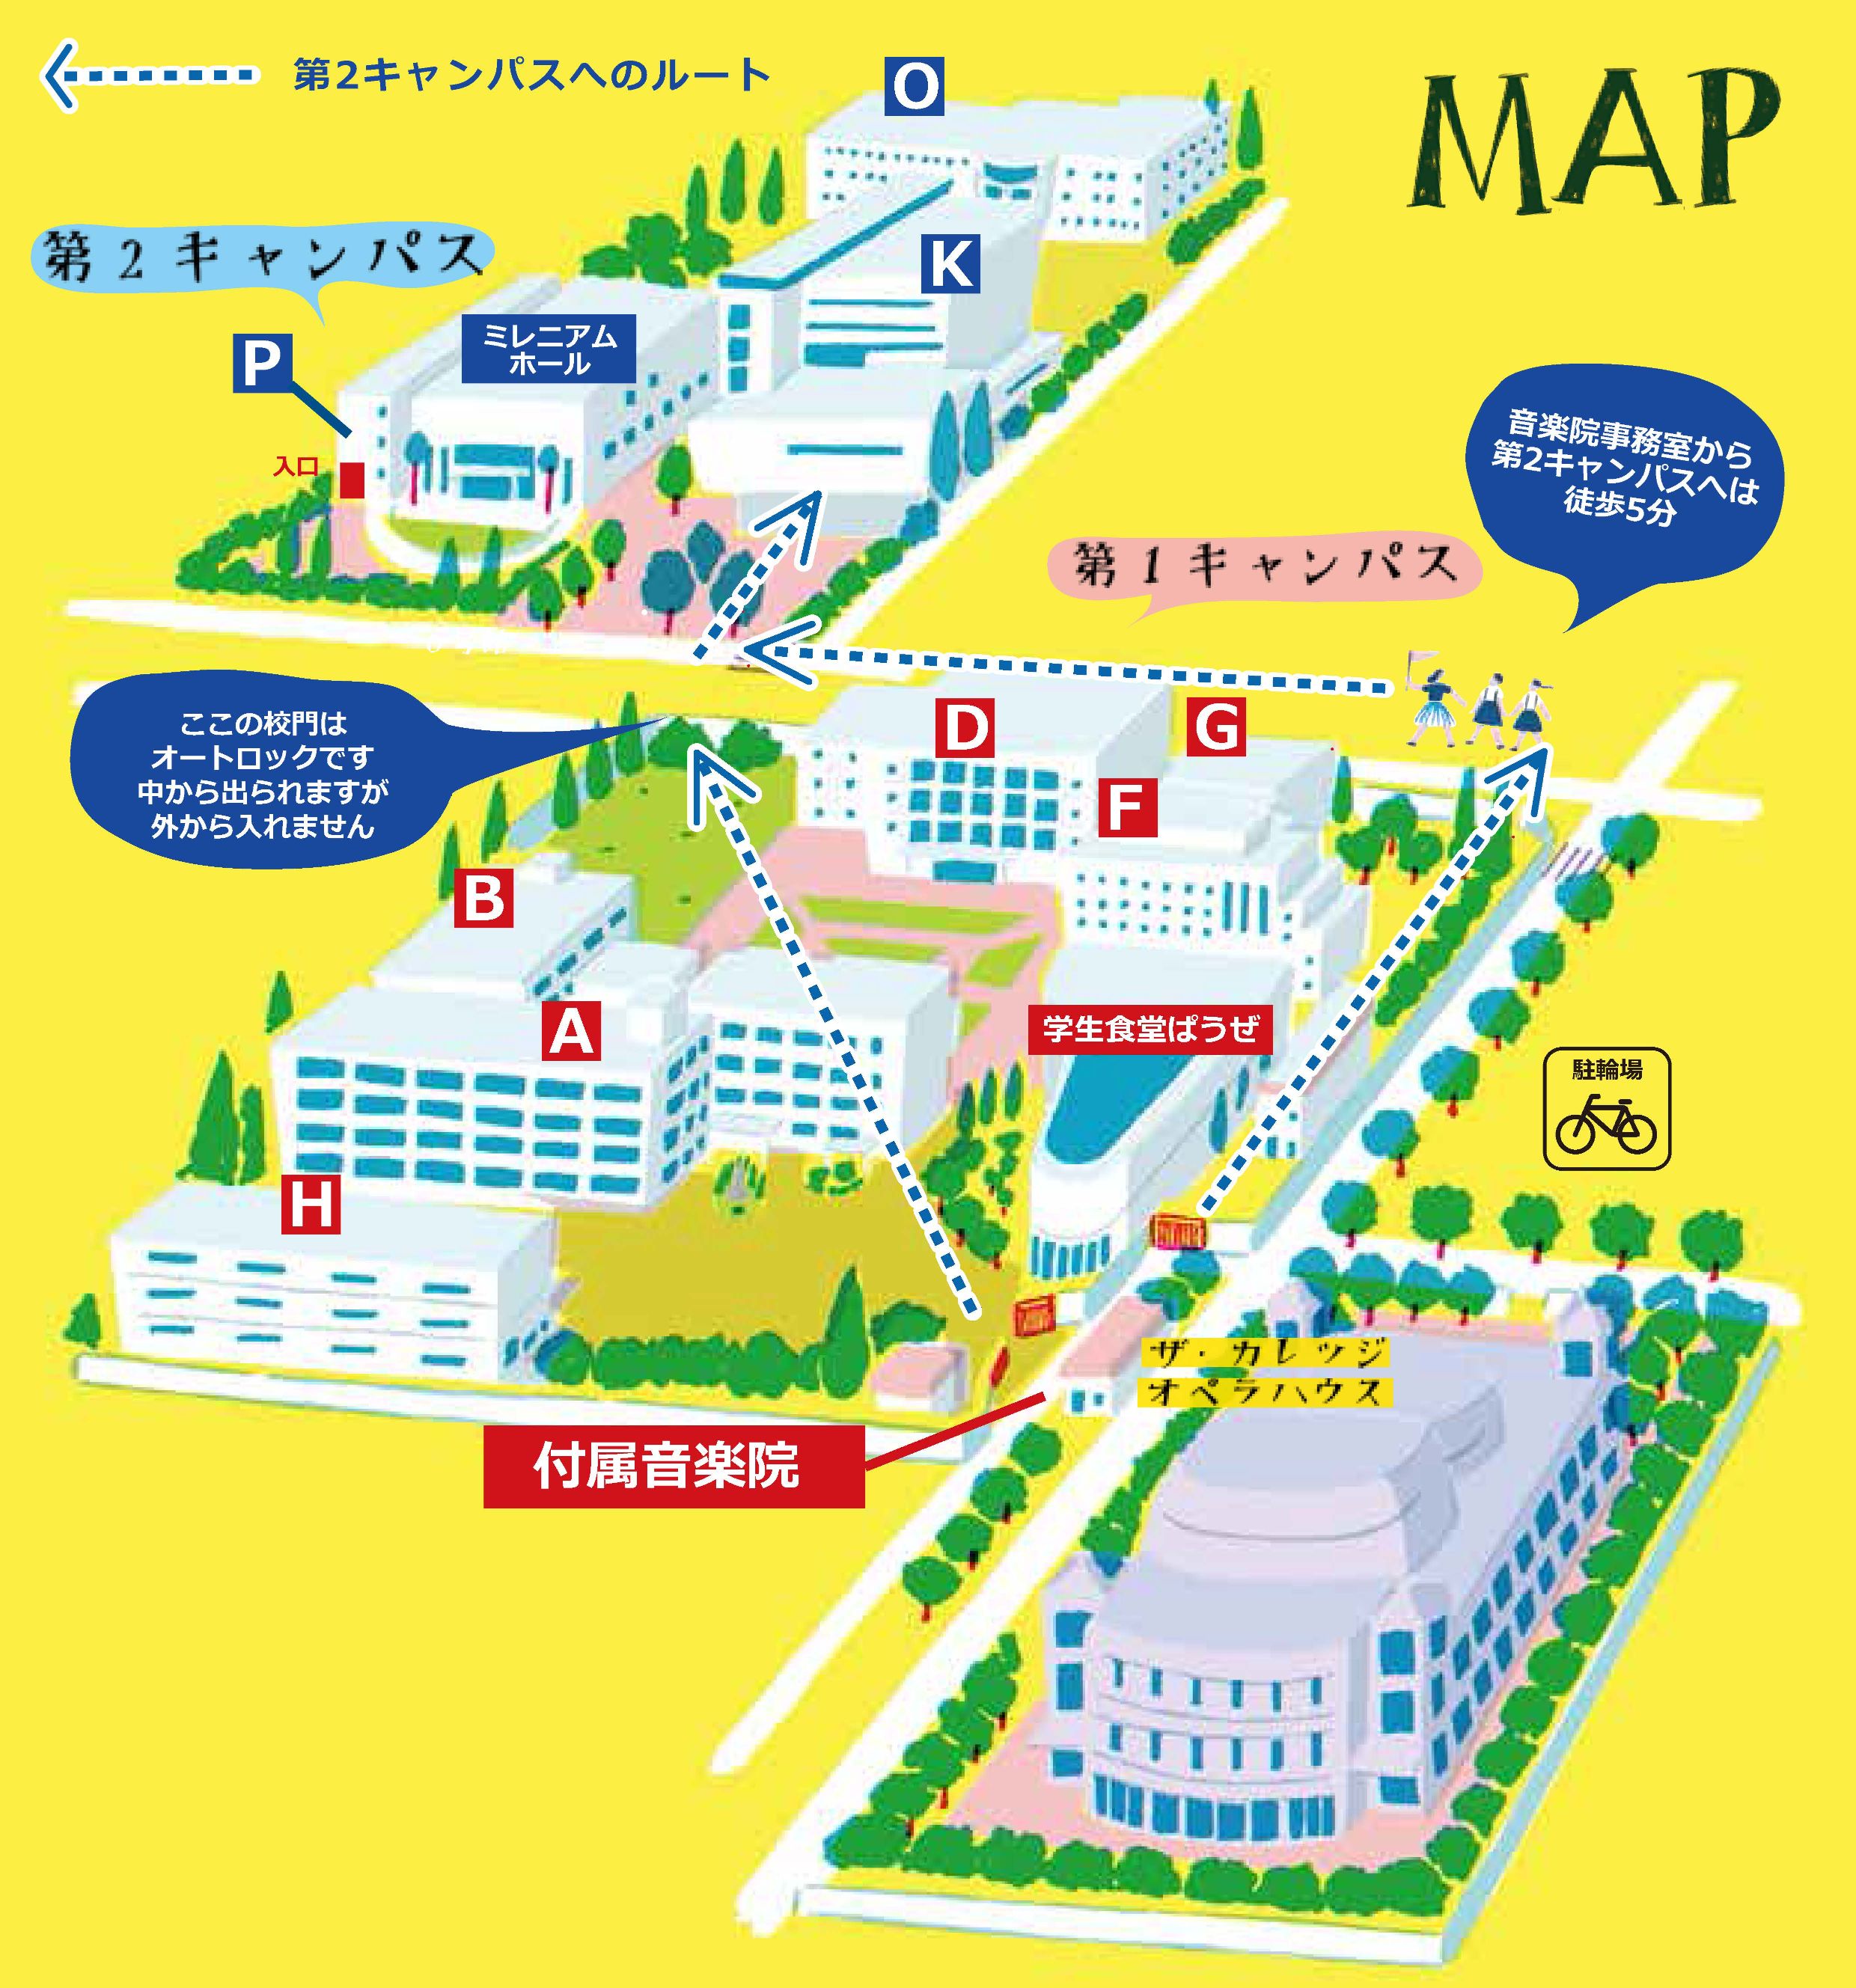 大阪音楽大学内地図